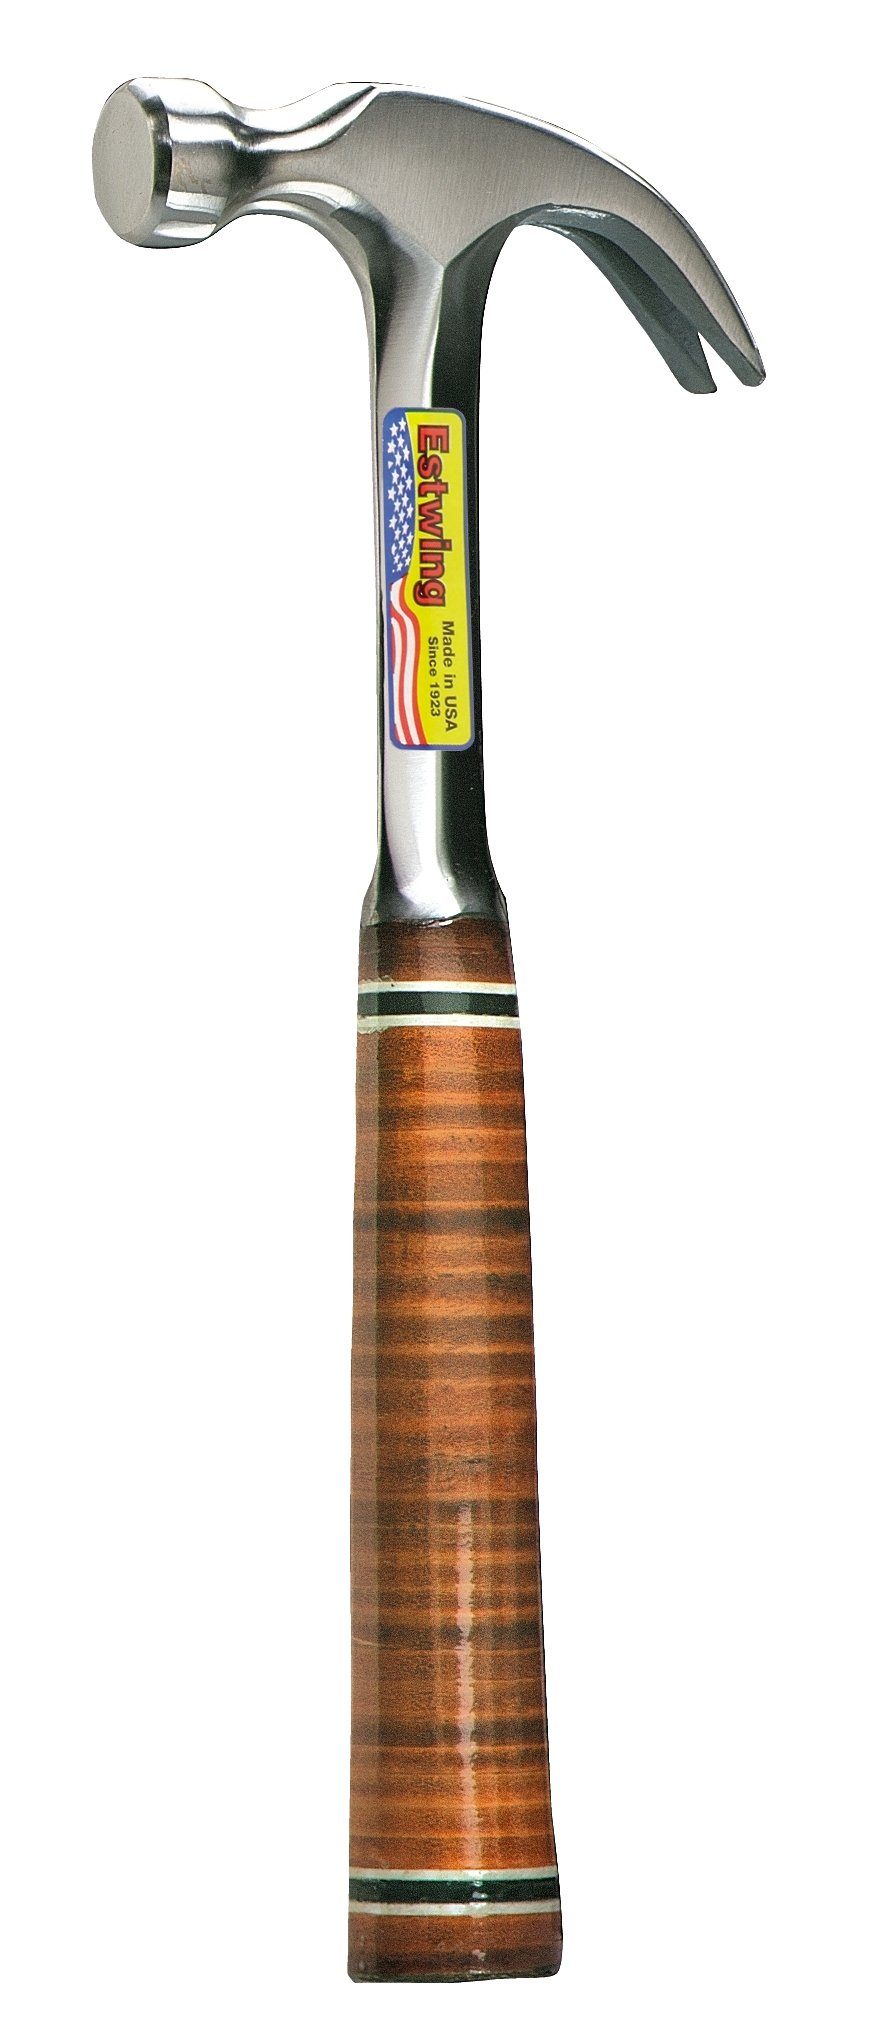 Estwing Hammer ESTWING Klauenhammer mit Ledergriff, gekröpft, Ø25mm 450g